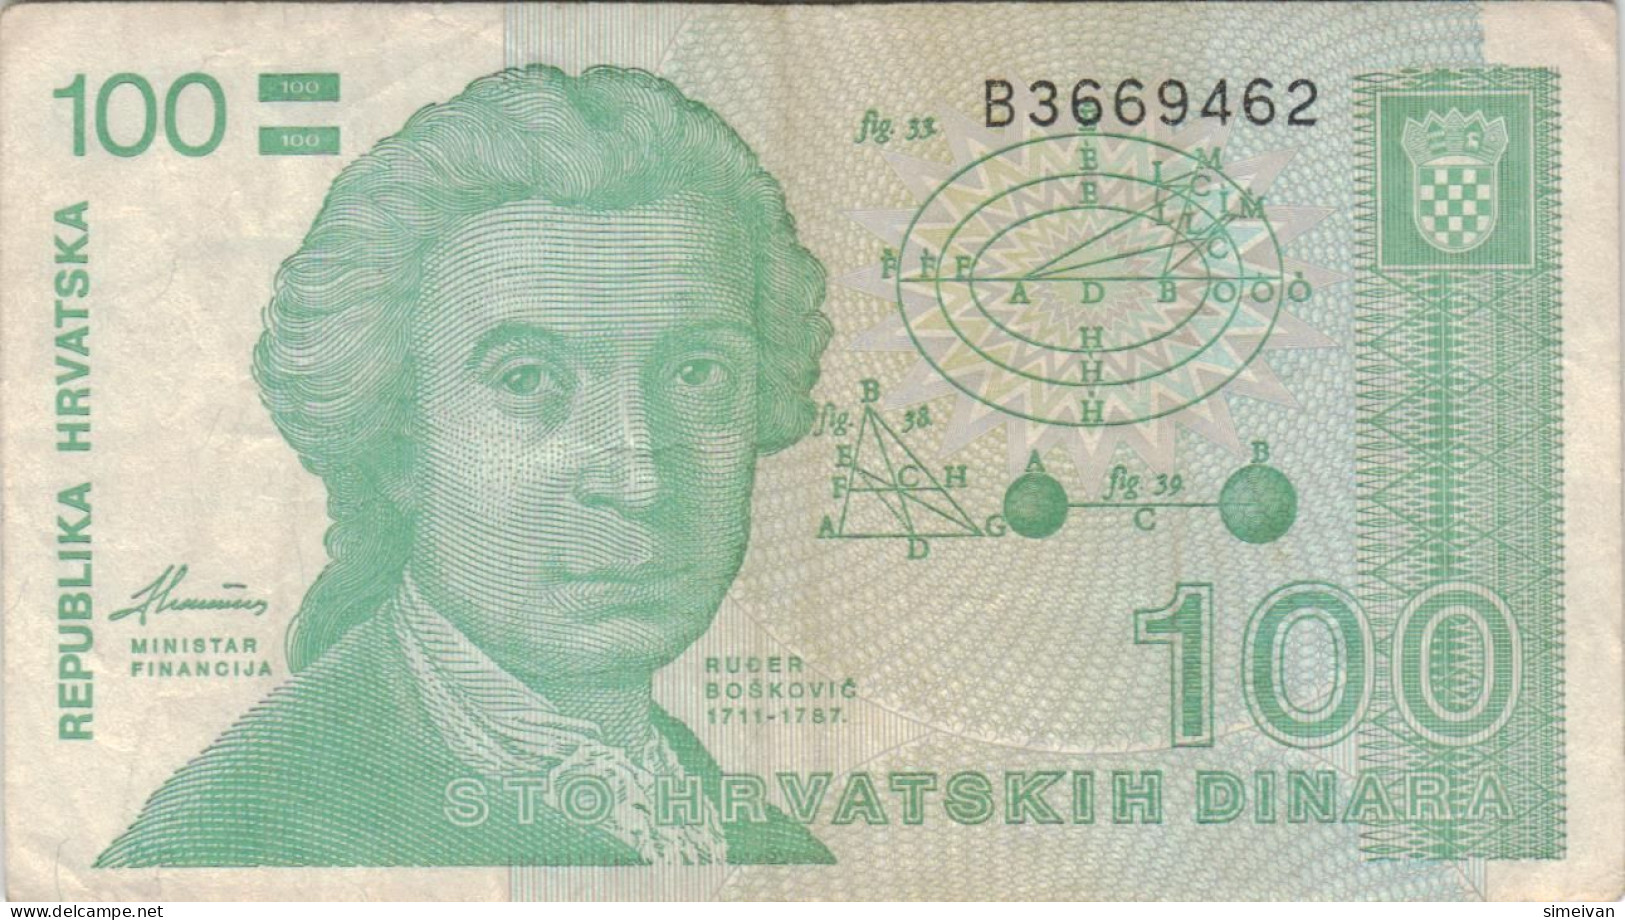 Croatia 100 Dinara 1991 P-20a Banknote Europe Currency Croatie Kroatien #5326 - Kroatien